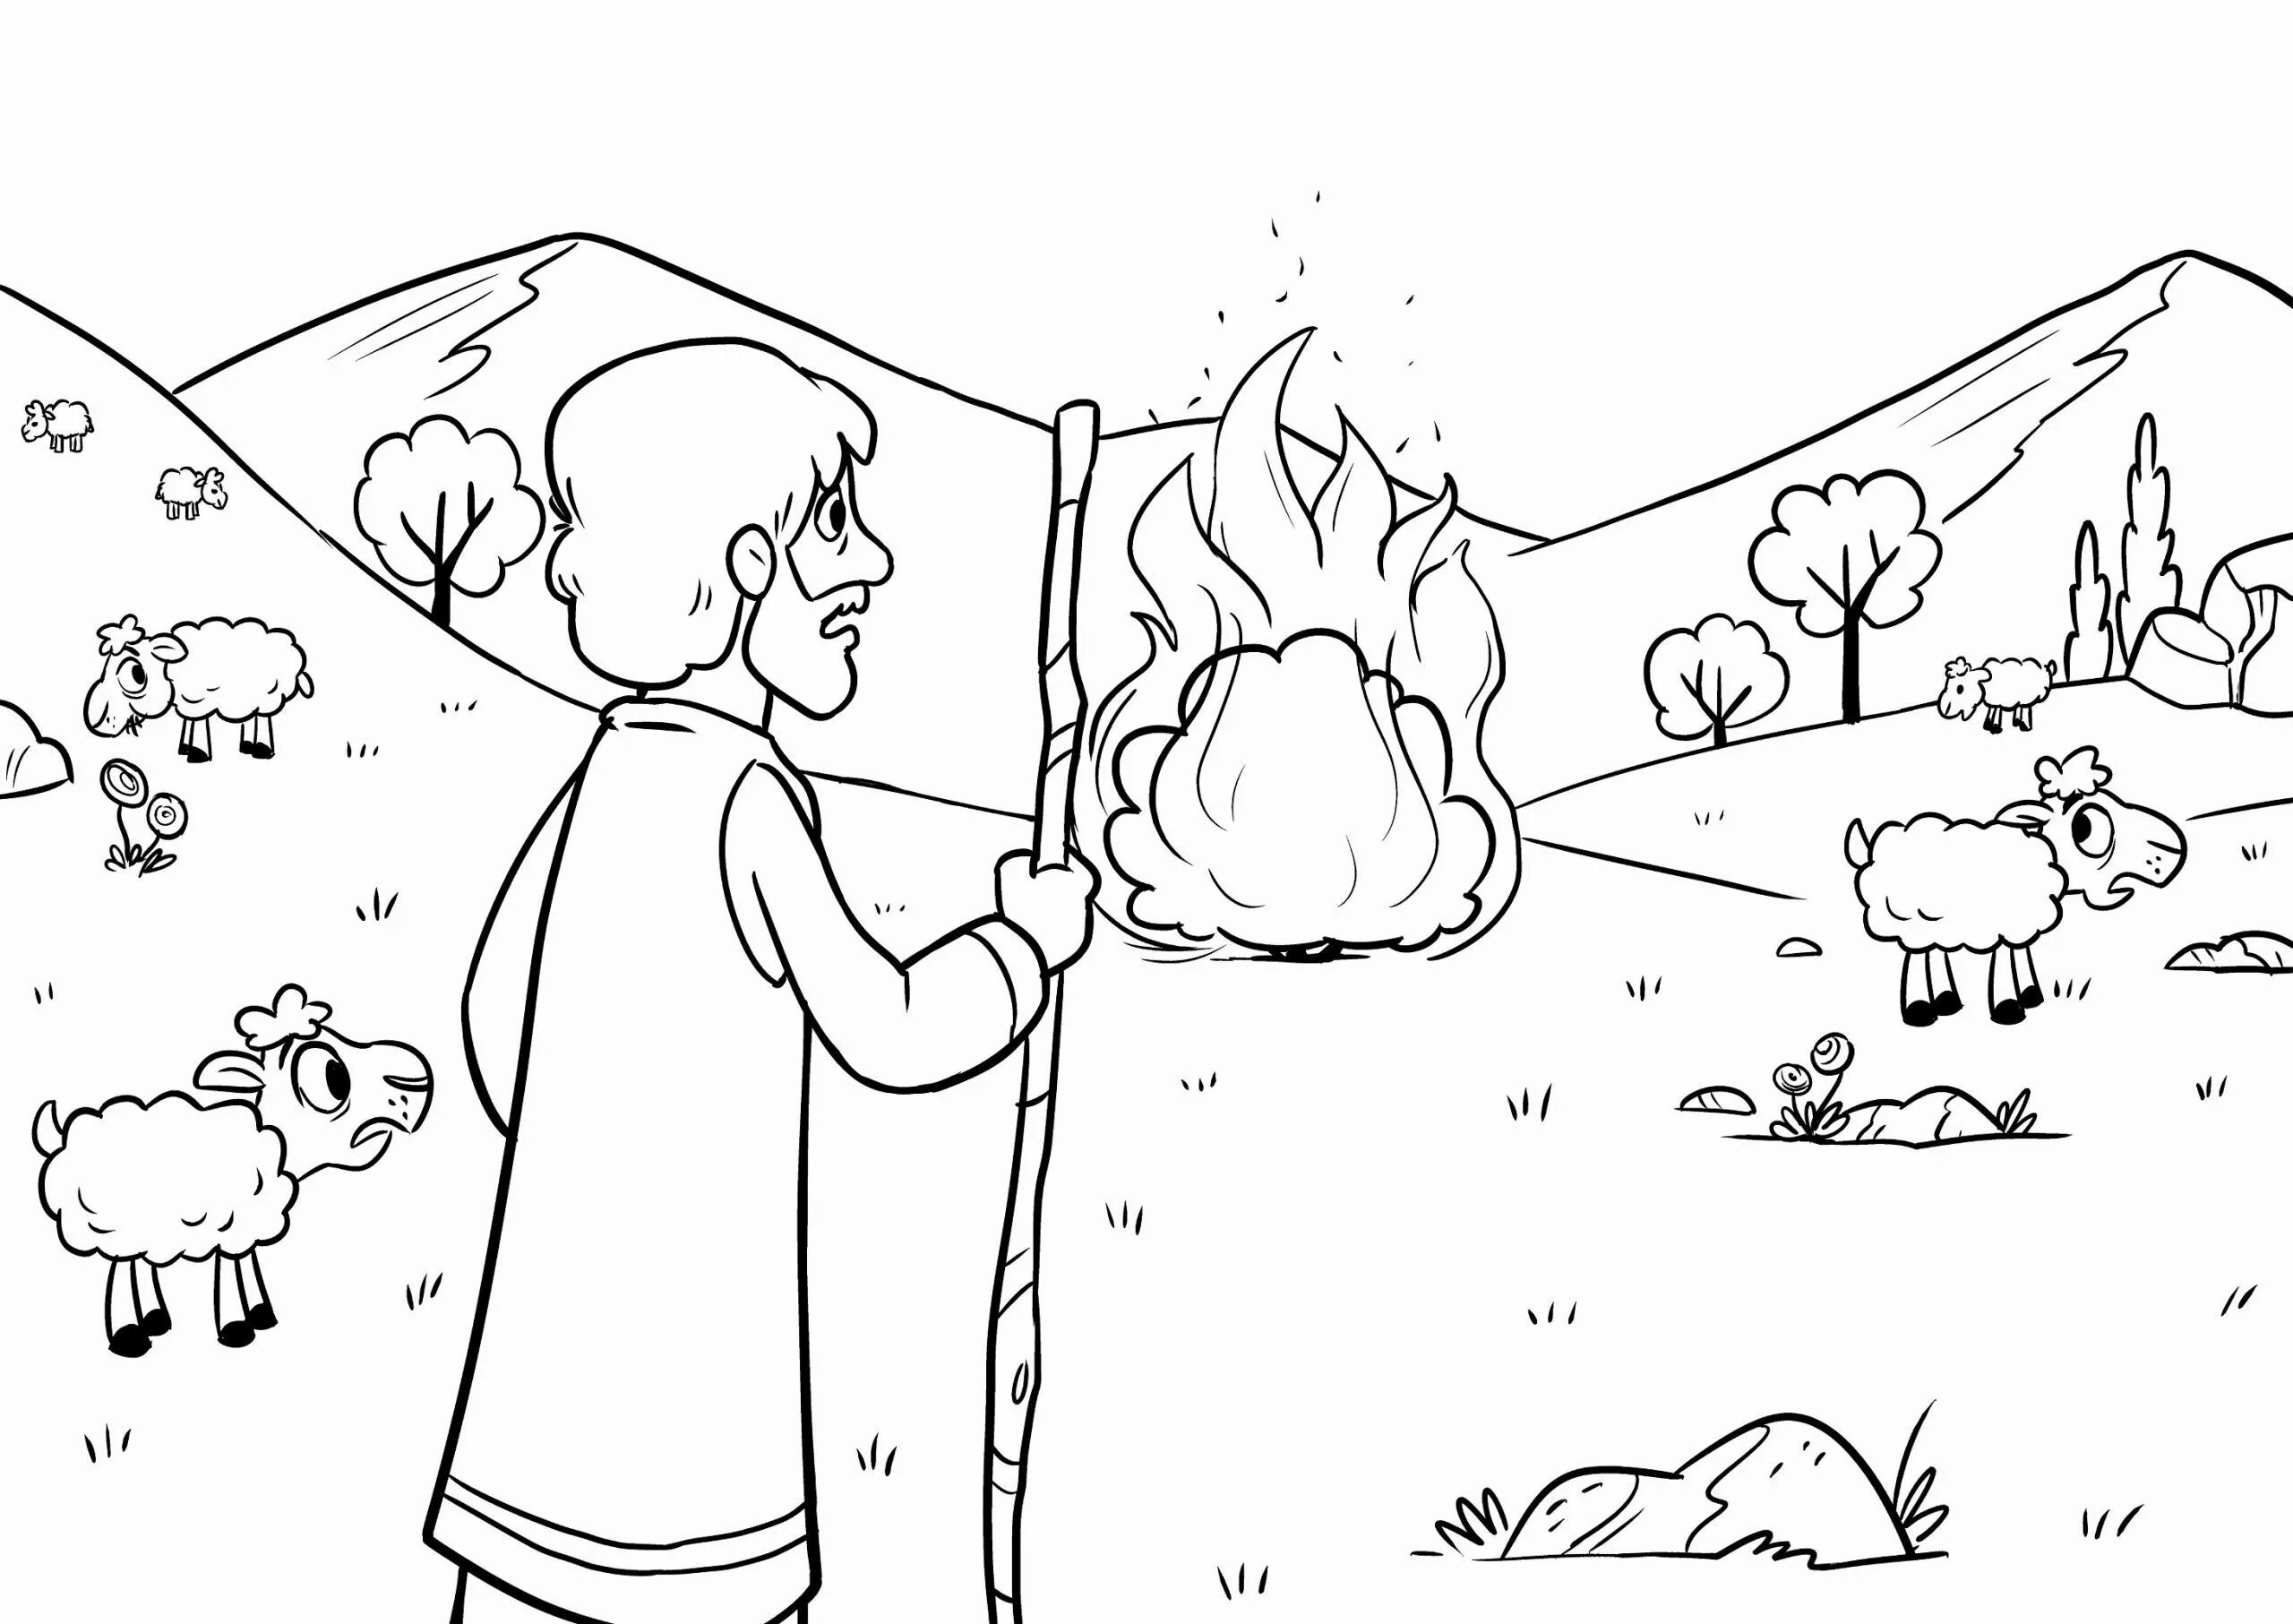 Drawing burning bush #1